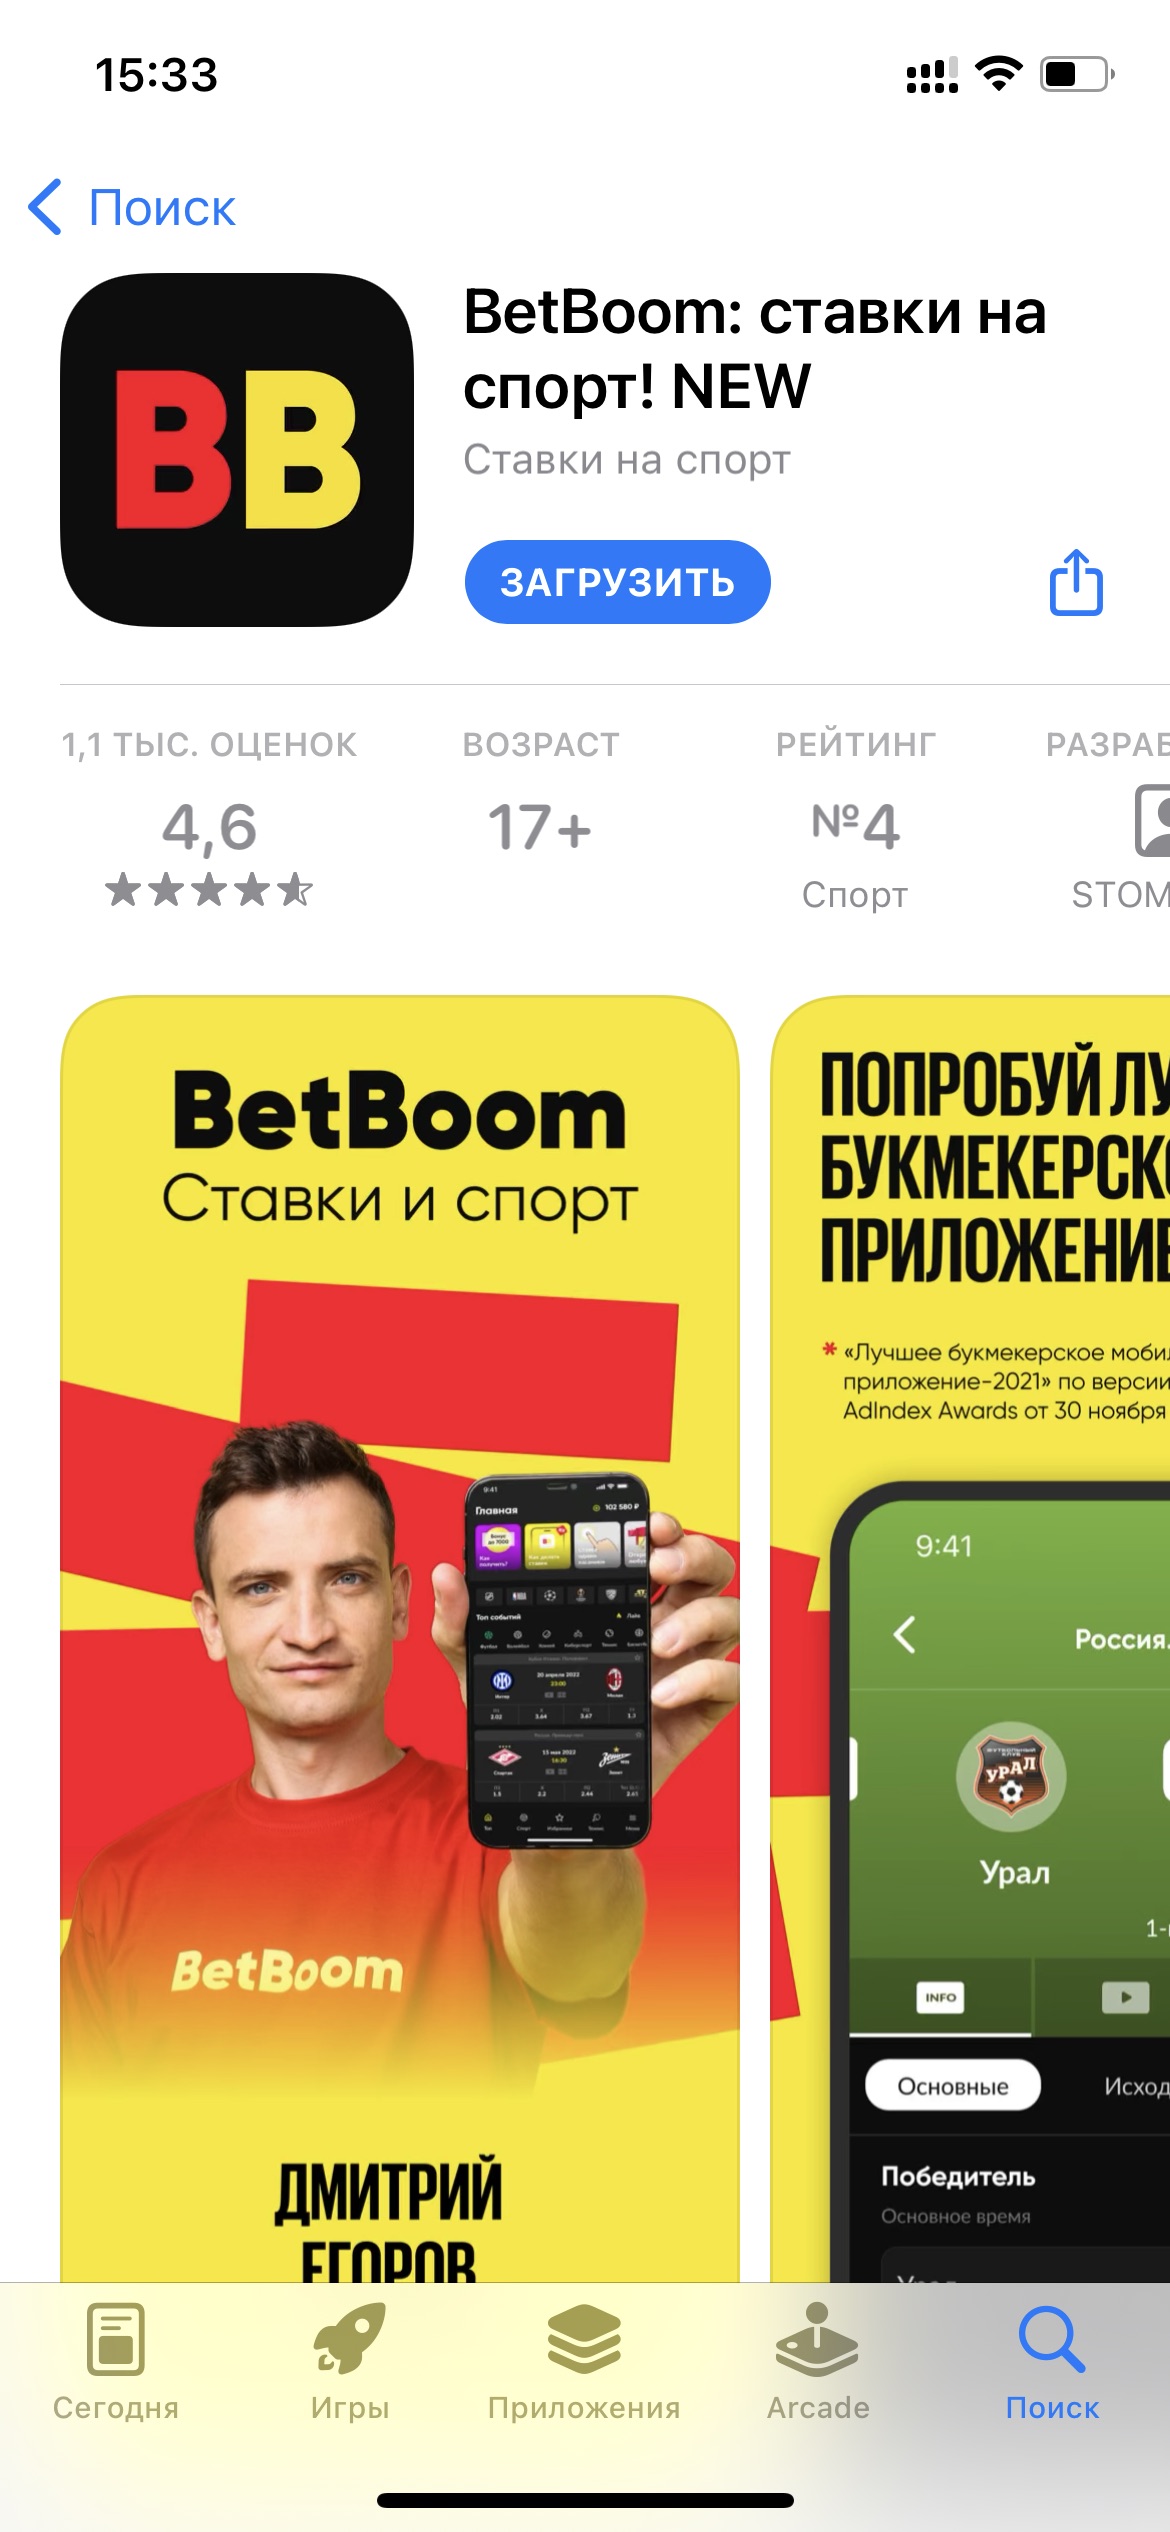 Страница приложения БК BetBoom для ioS в магазине AppStore